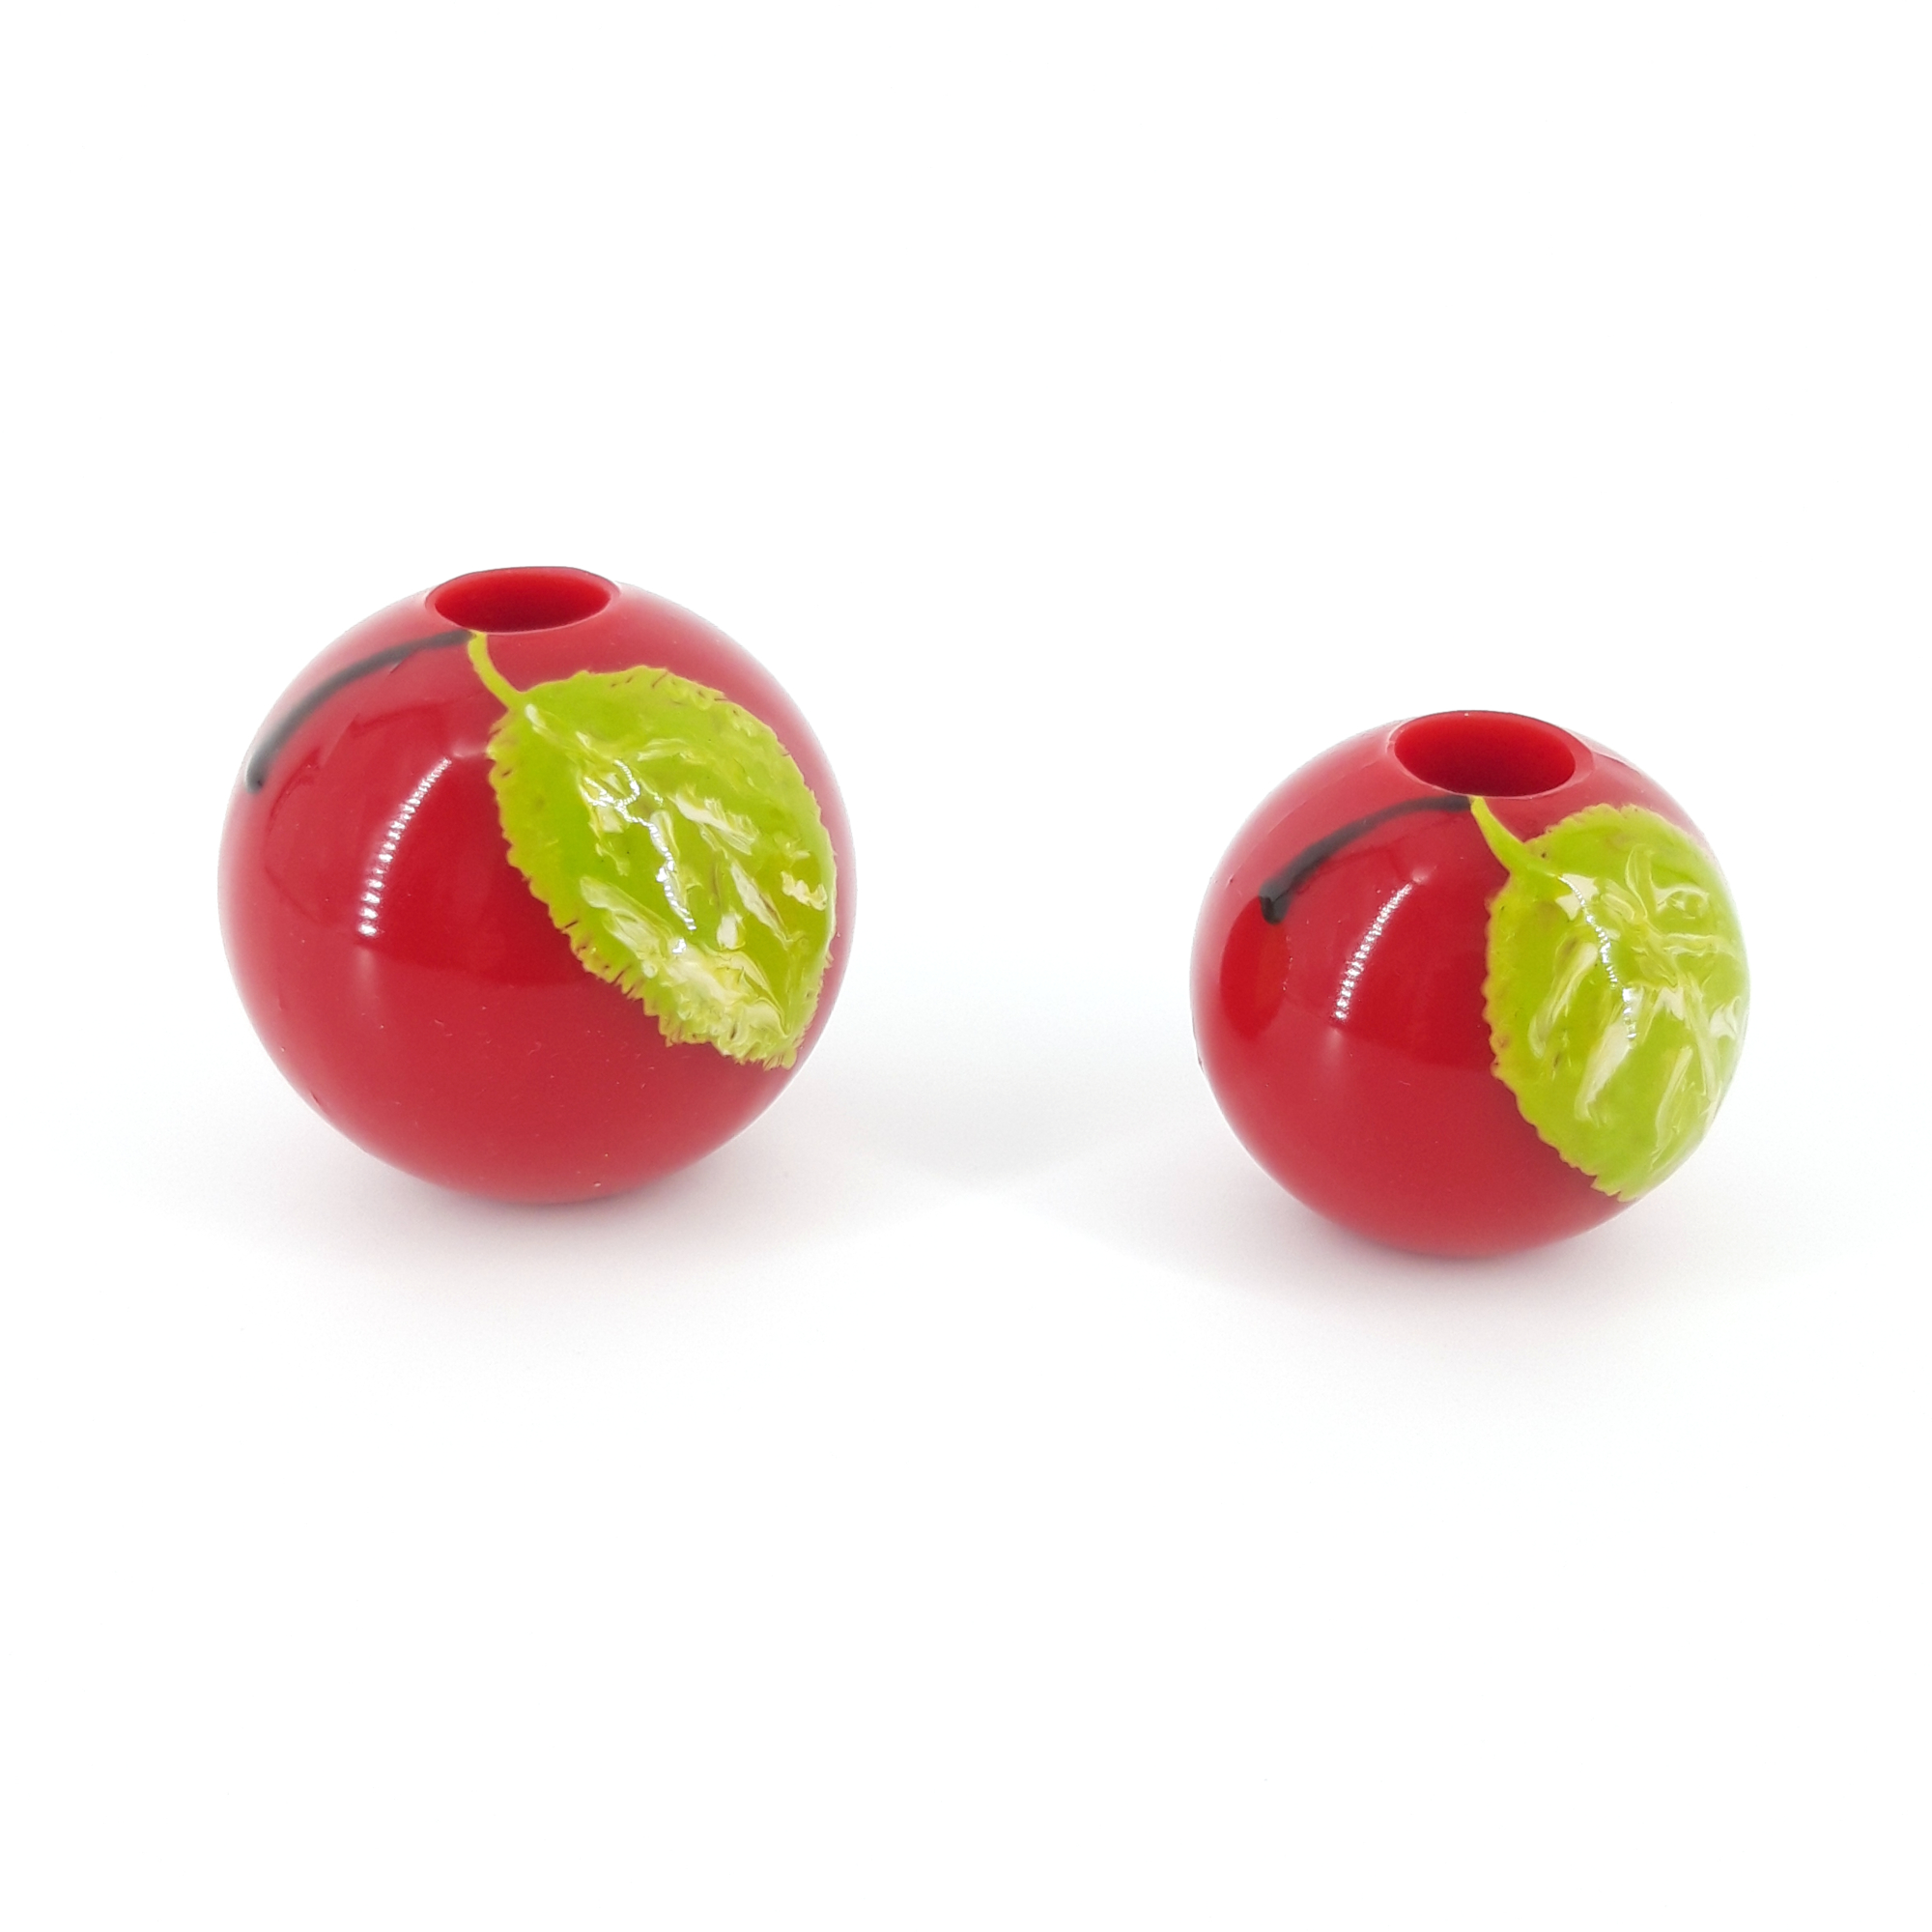 ball gag: red apple